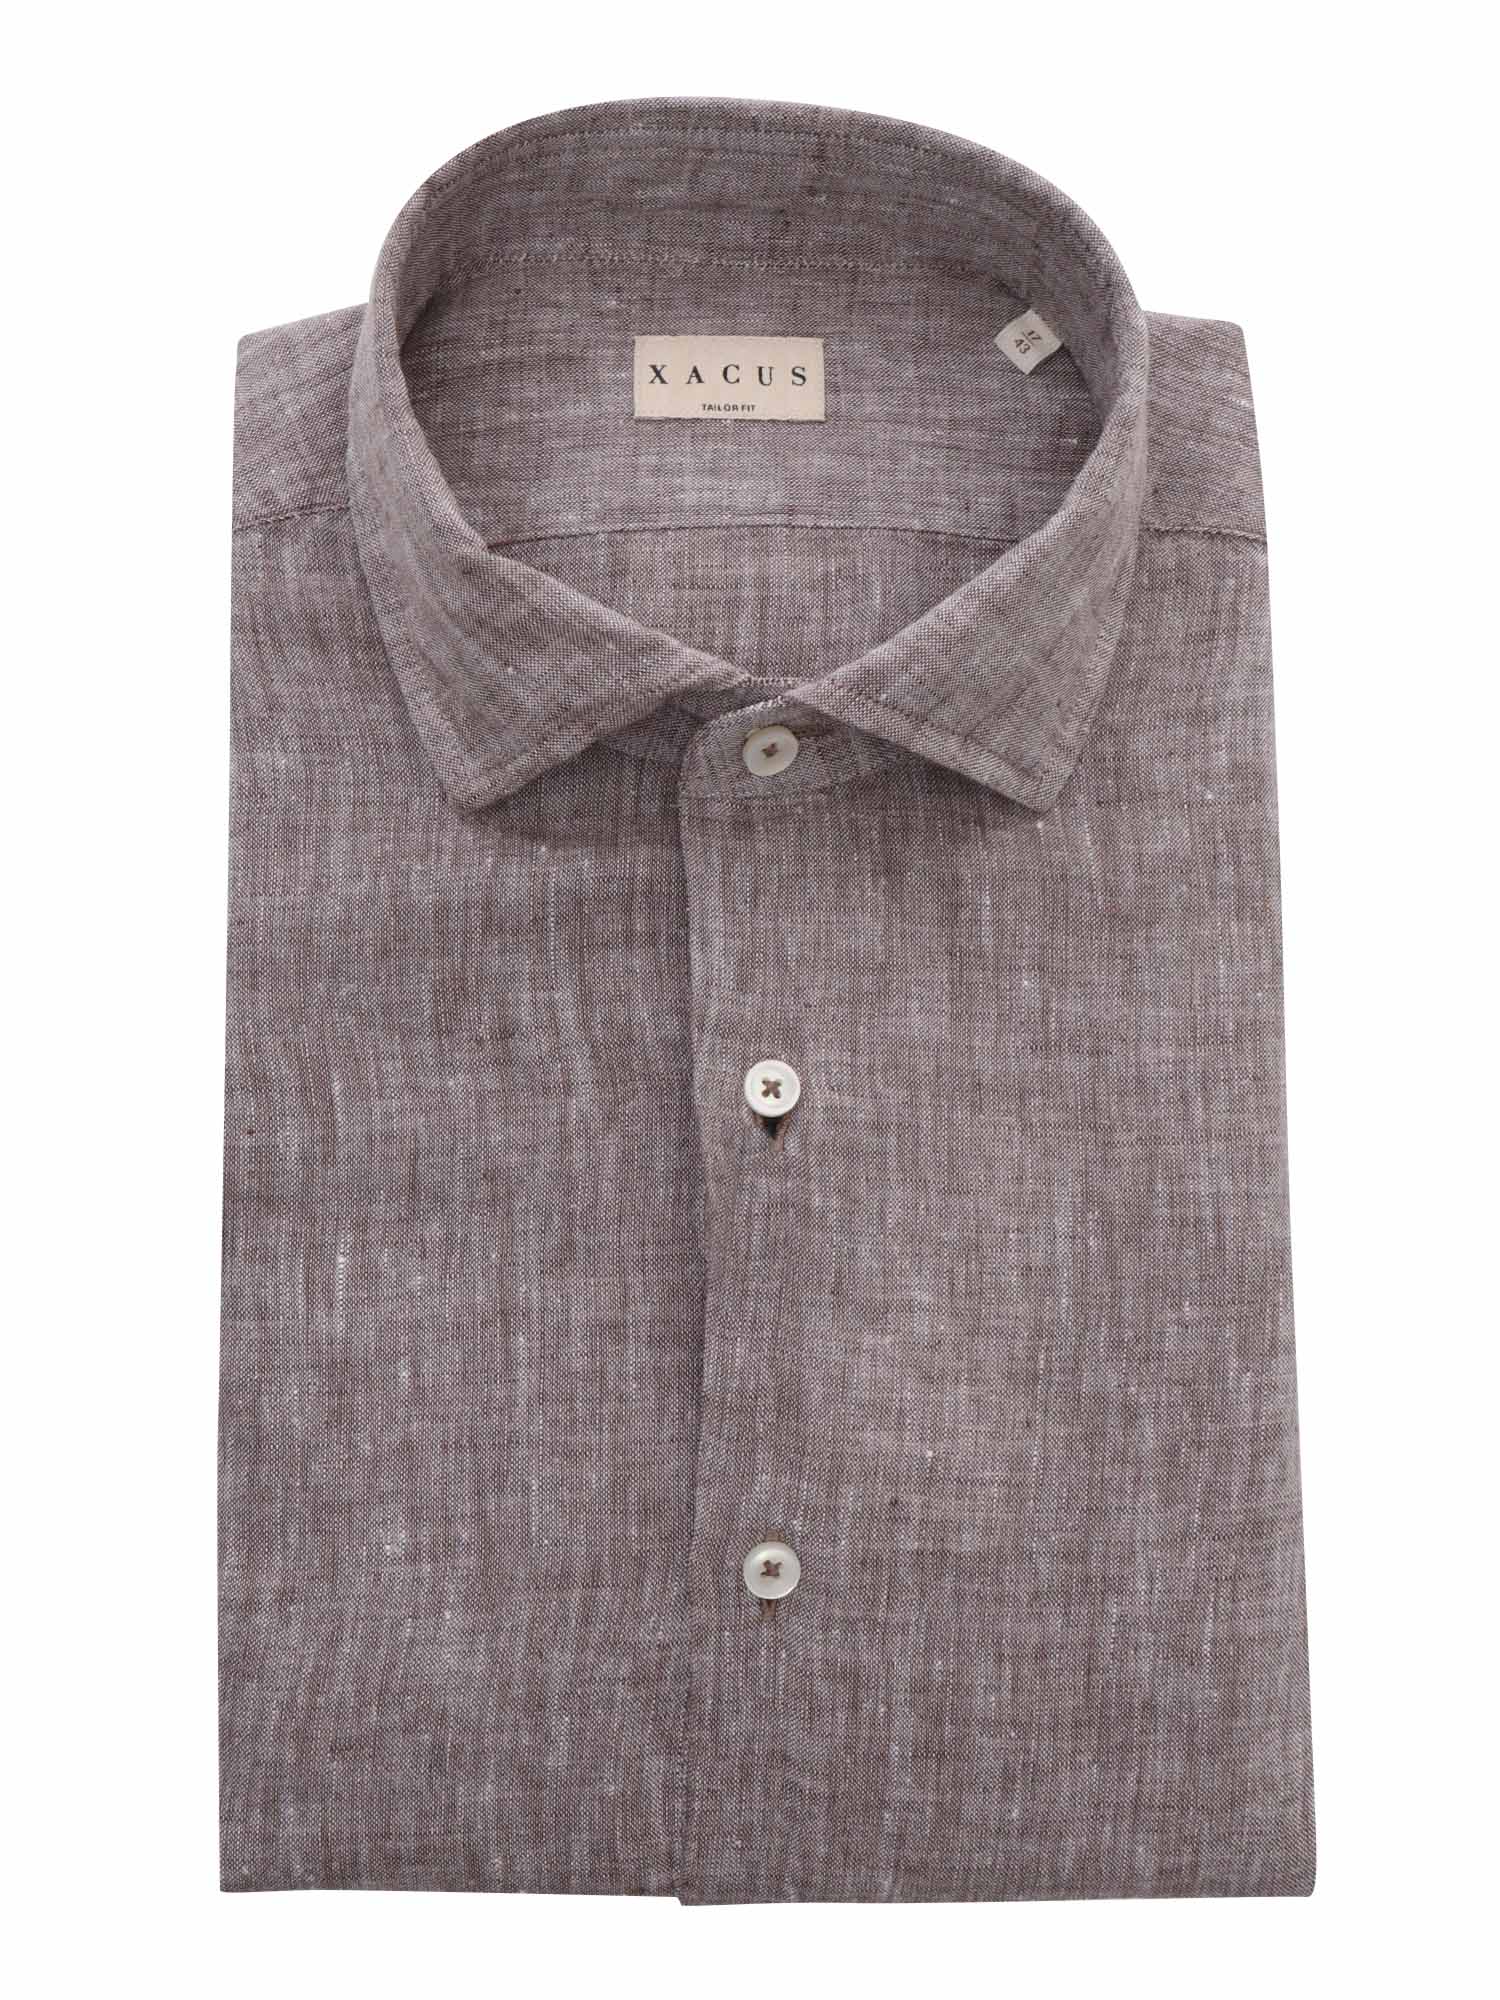 Shop Xacus Brown Linen Shirt